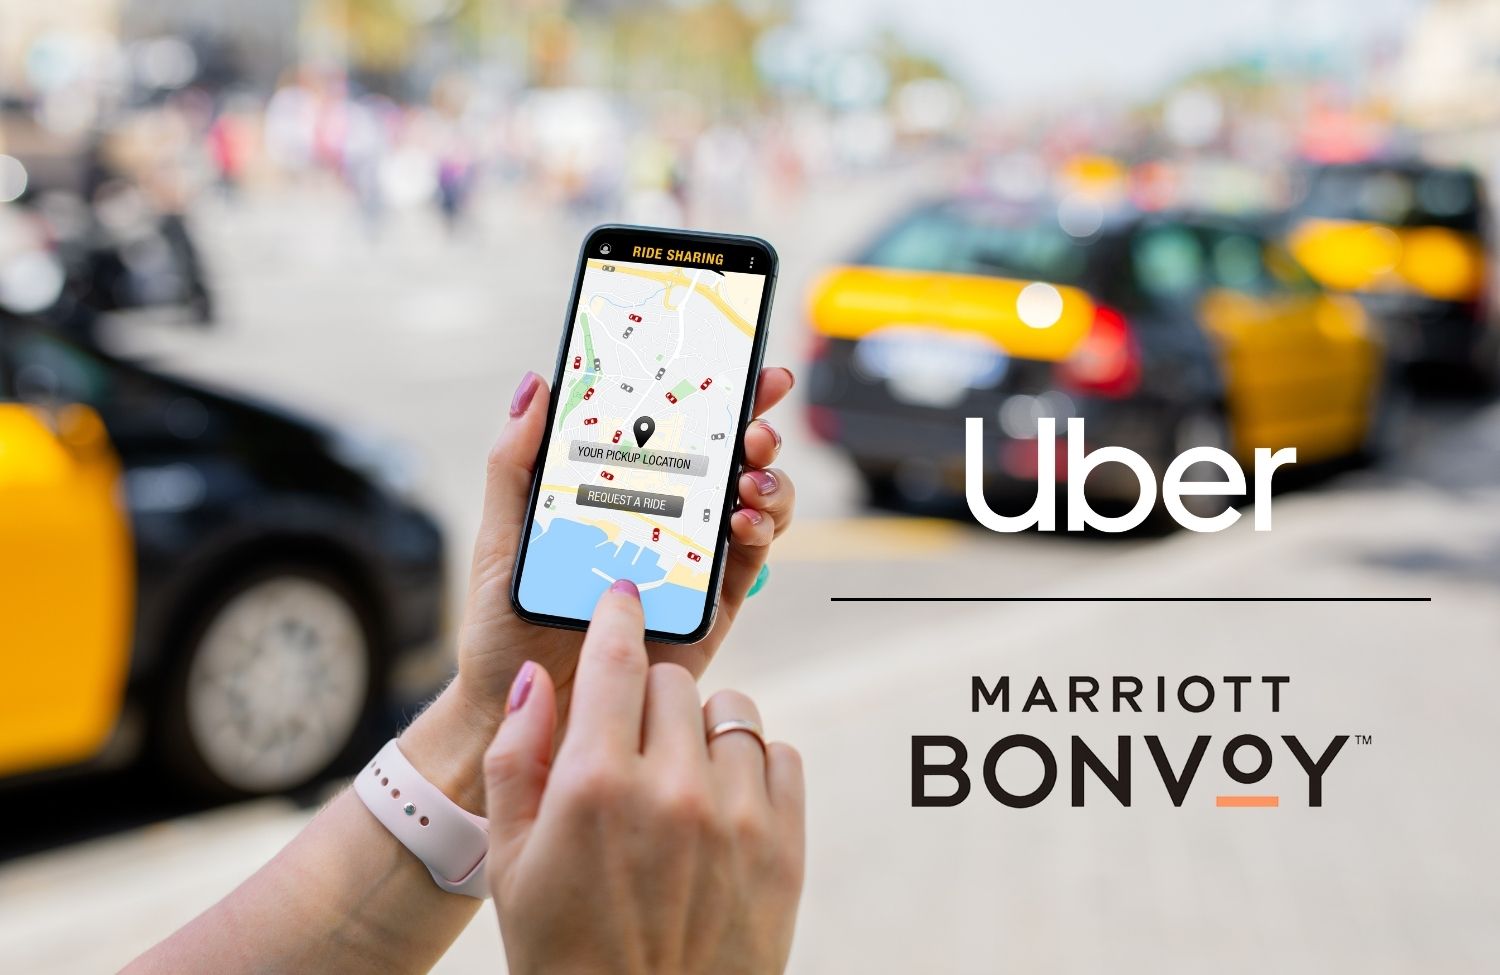 Marriott & Uber